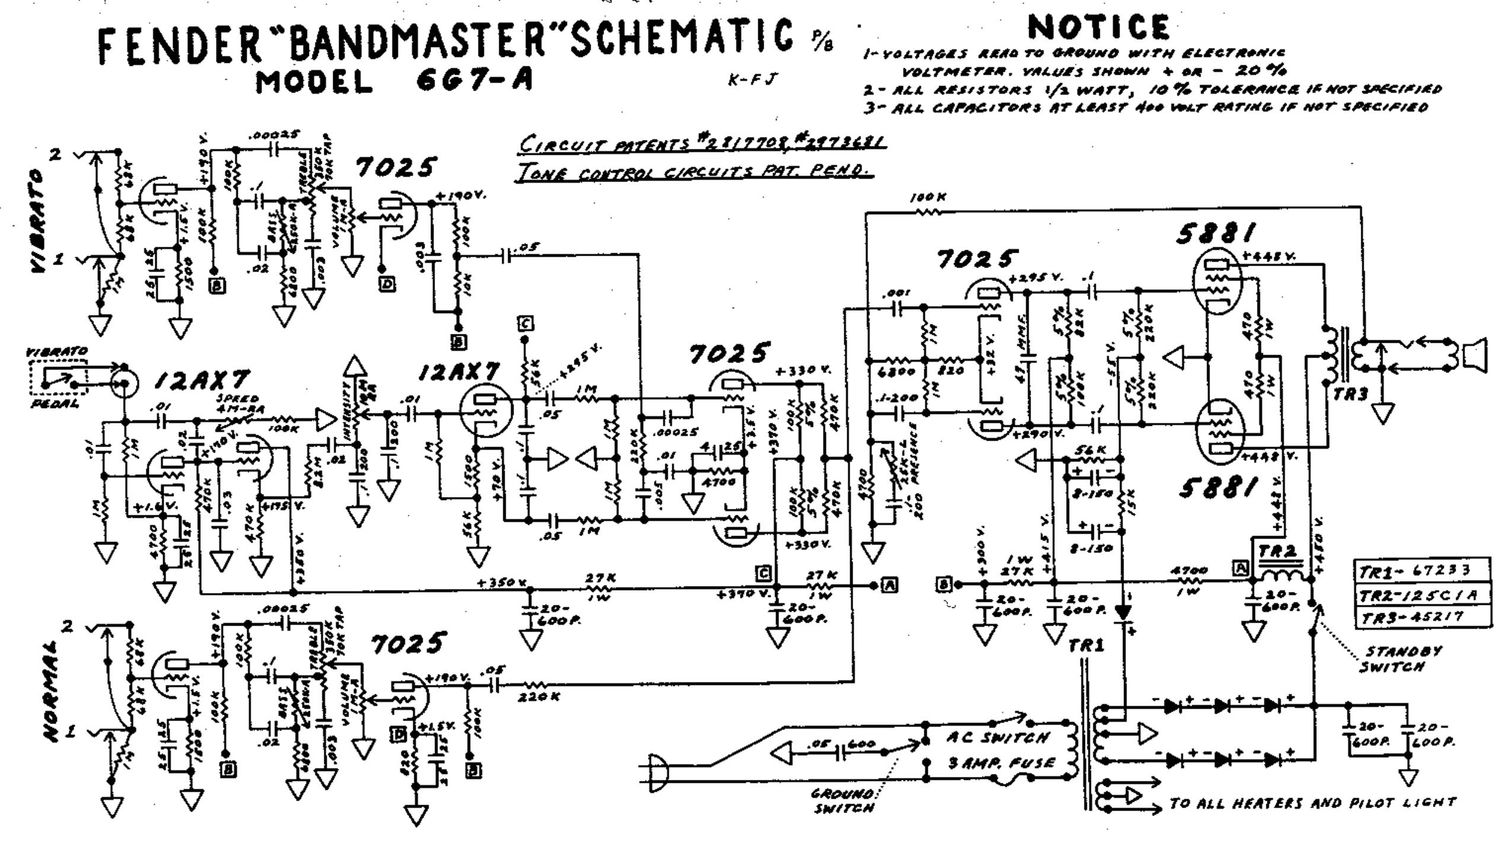 fender bandmaster 6g7a schematic